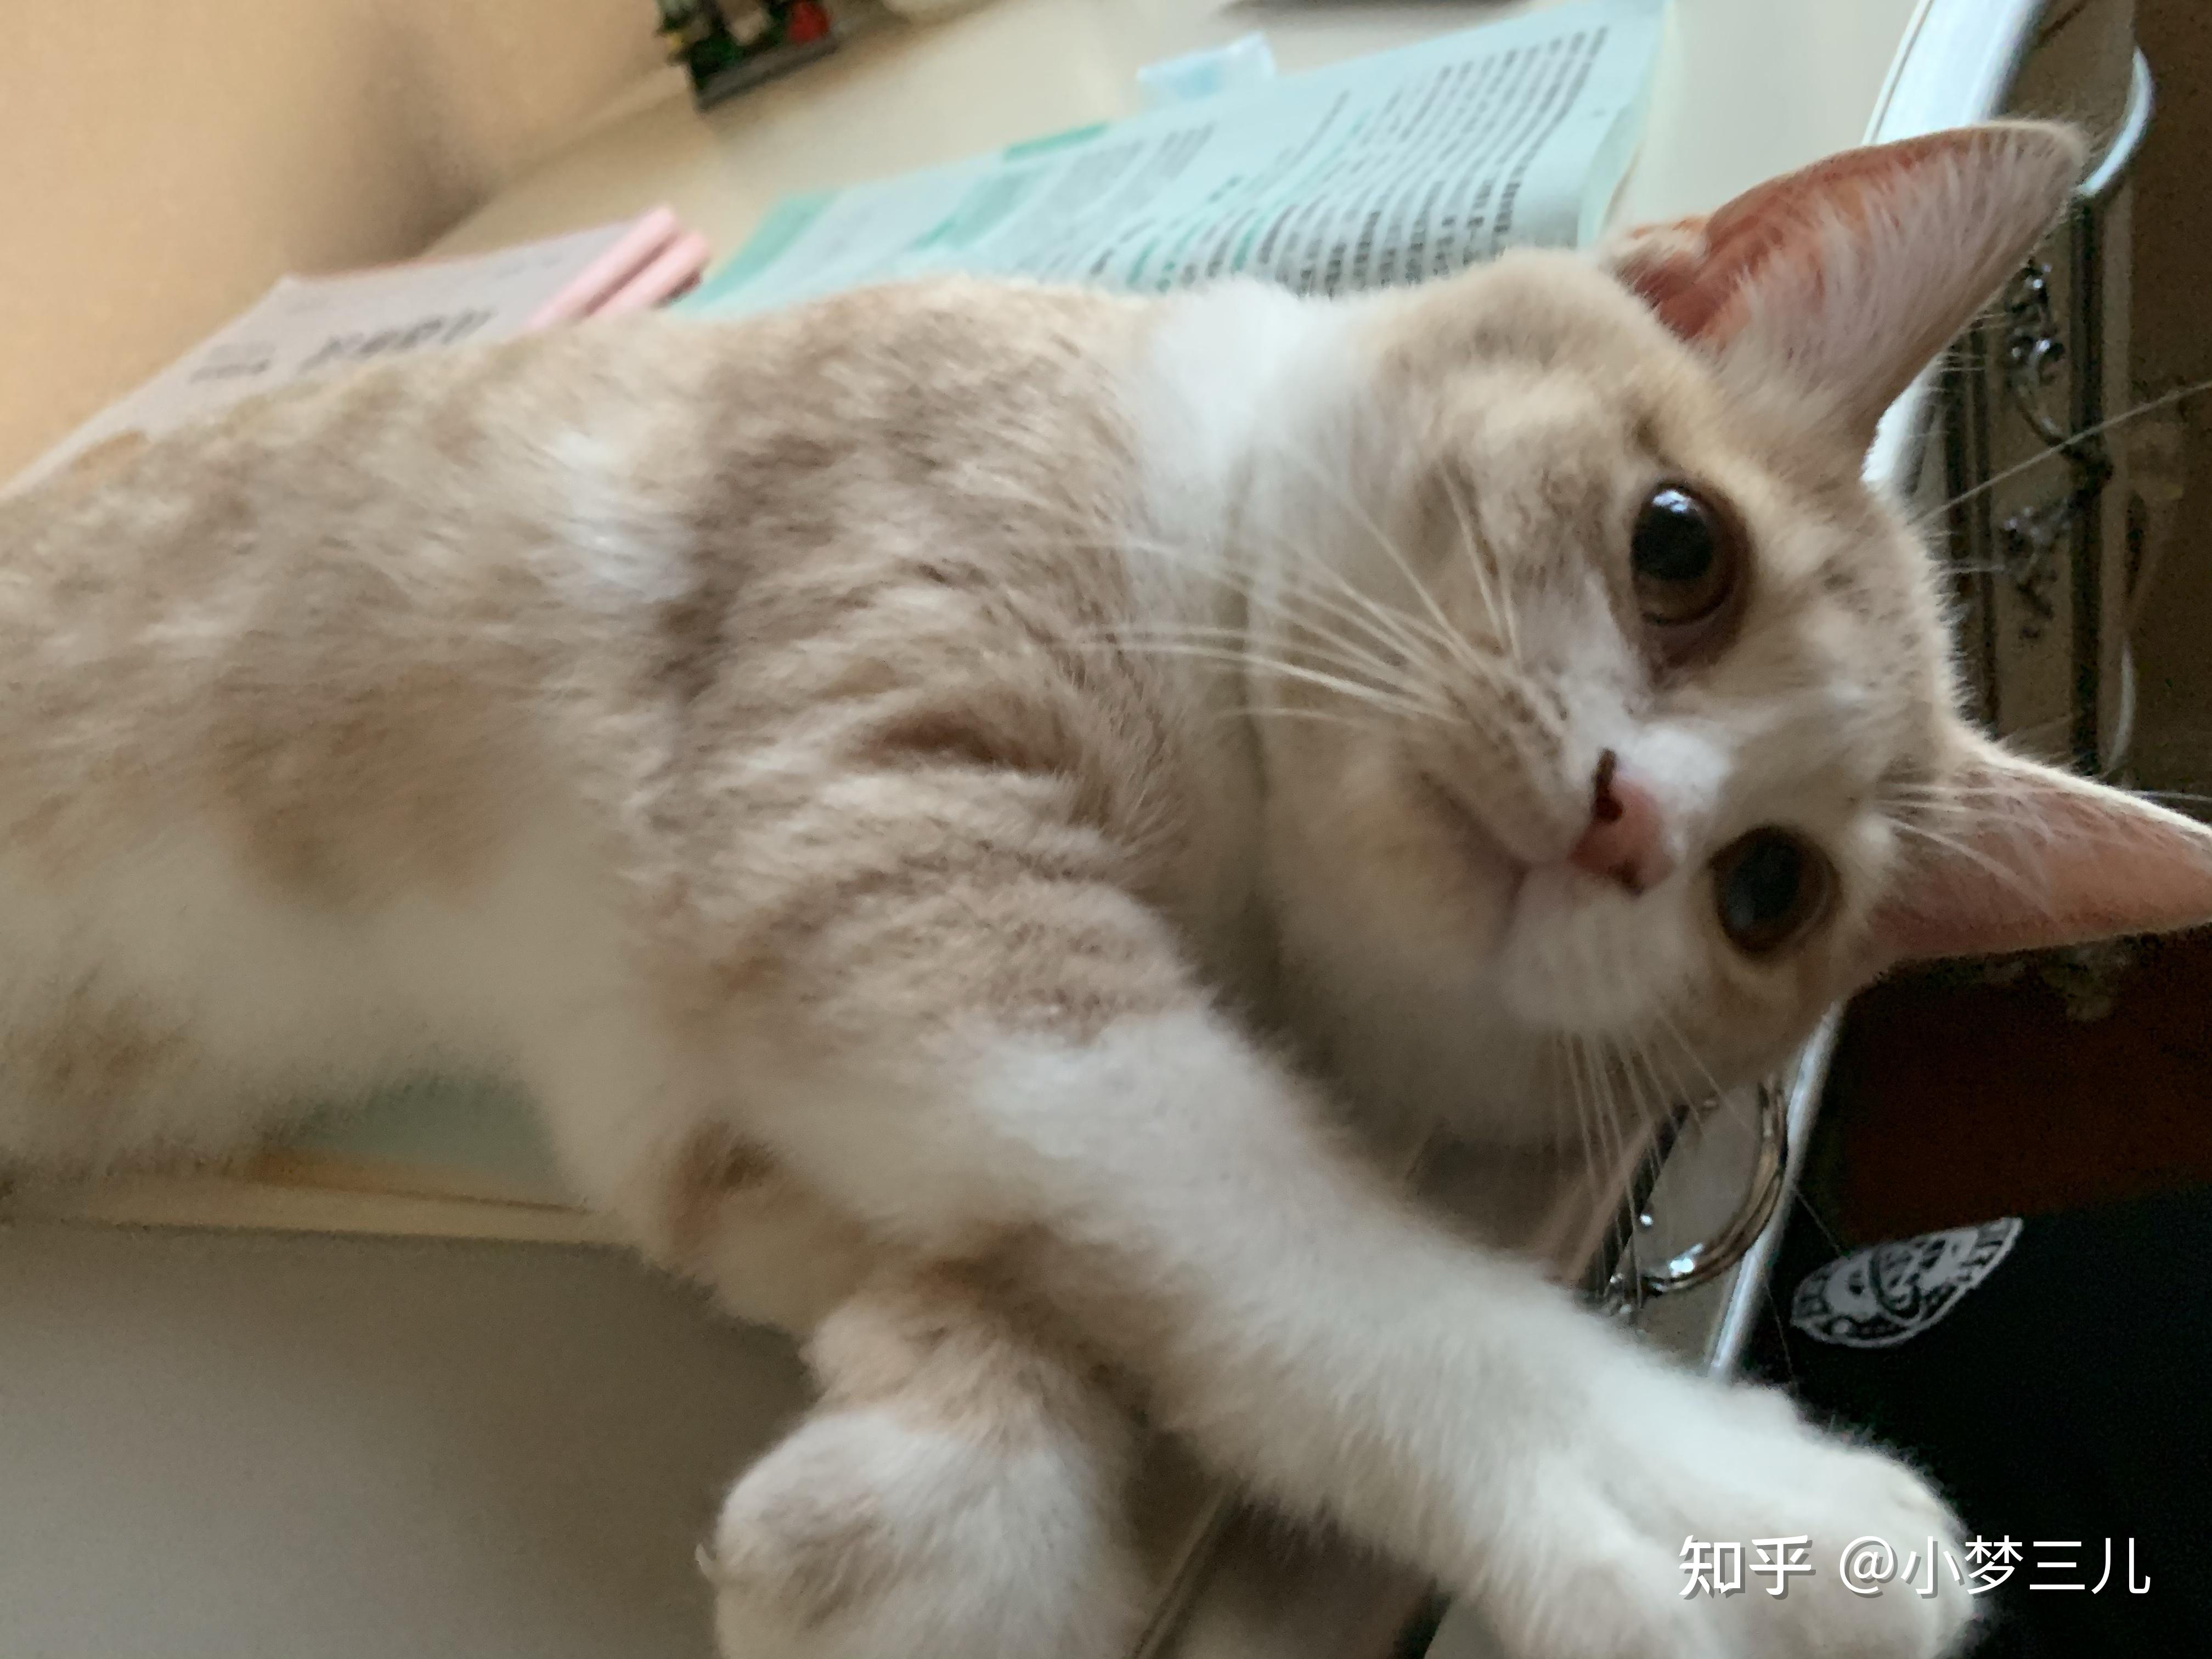 请问各位刘亦菲吴彦祖,这只是英短乳白猫吗?